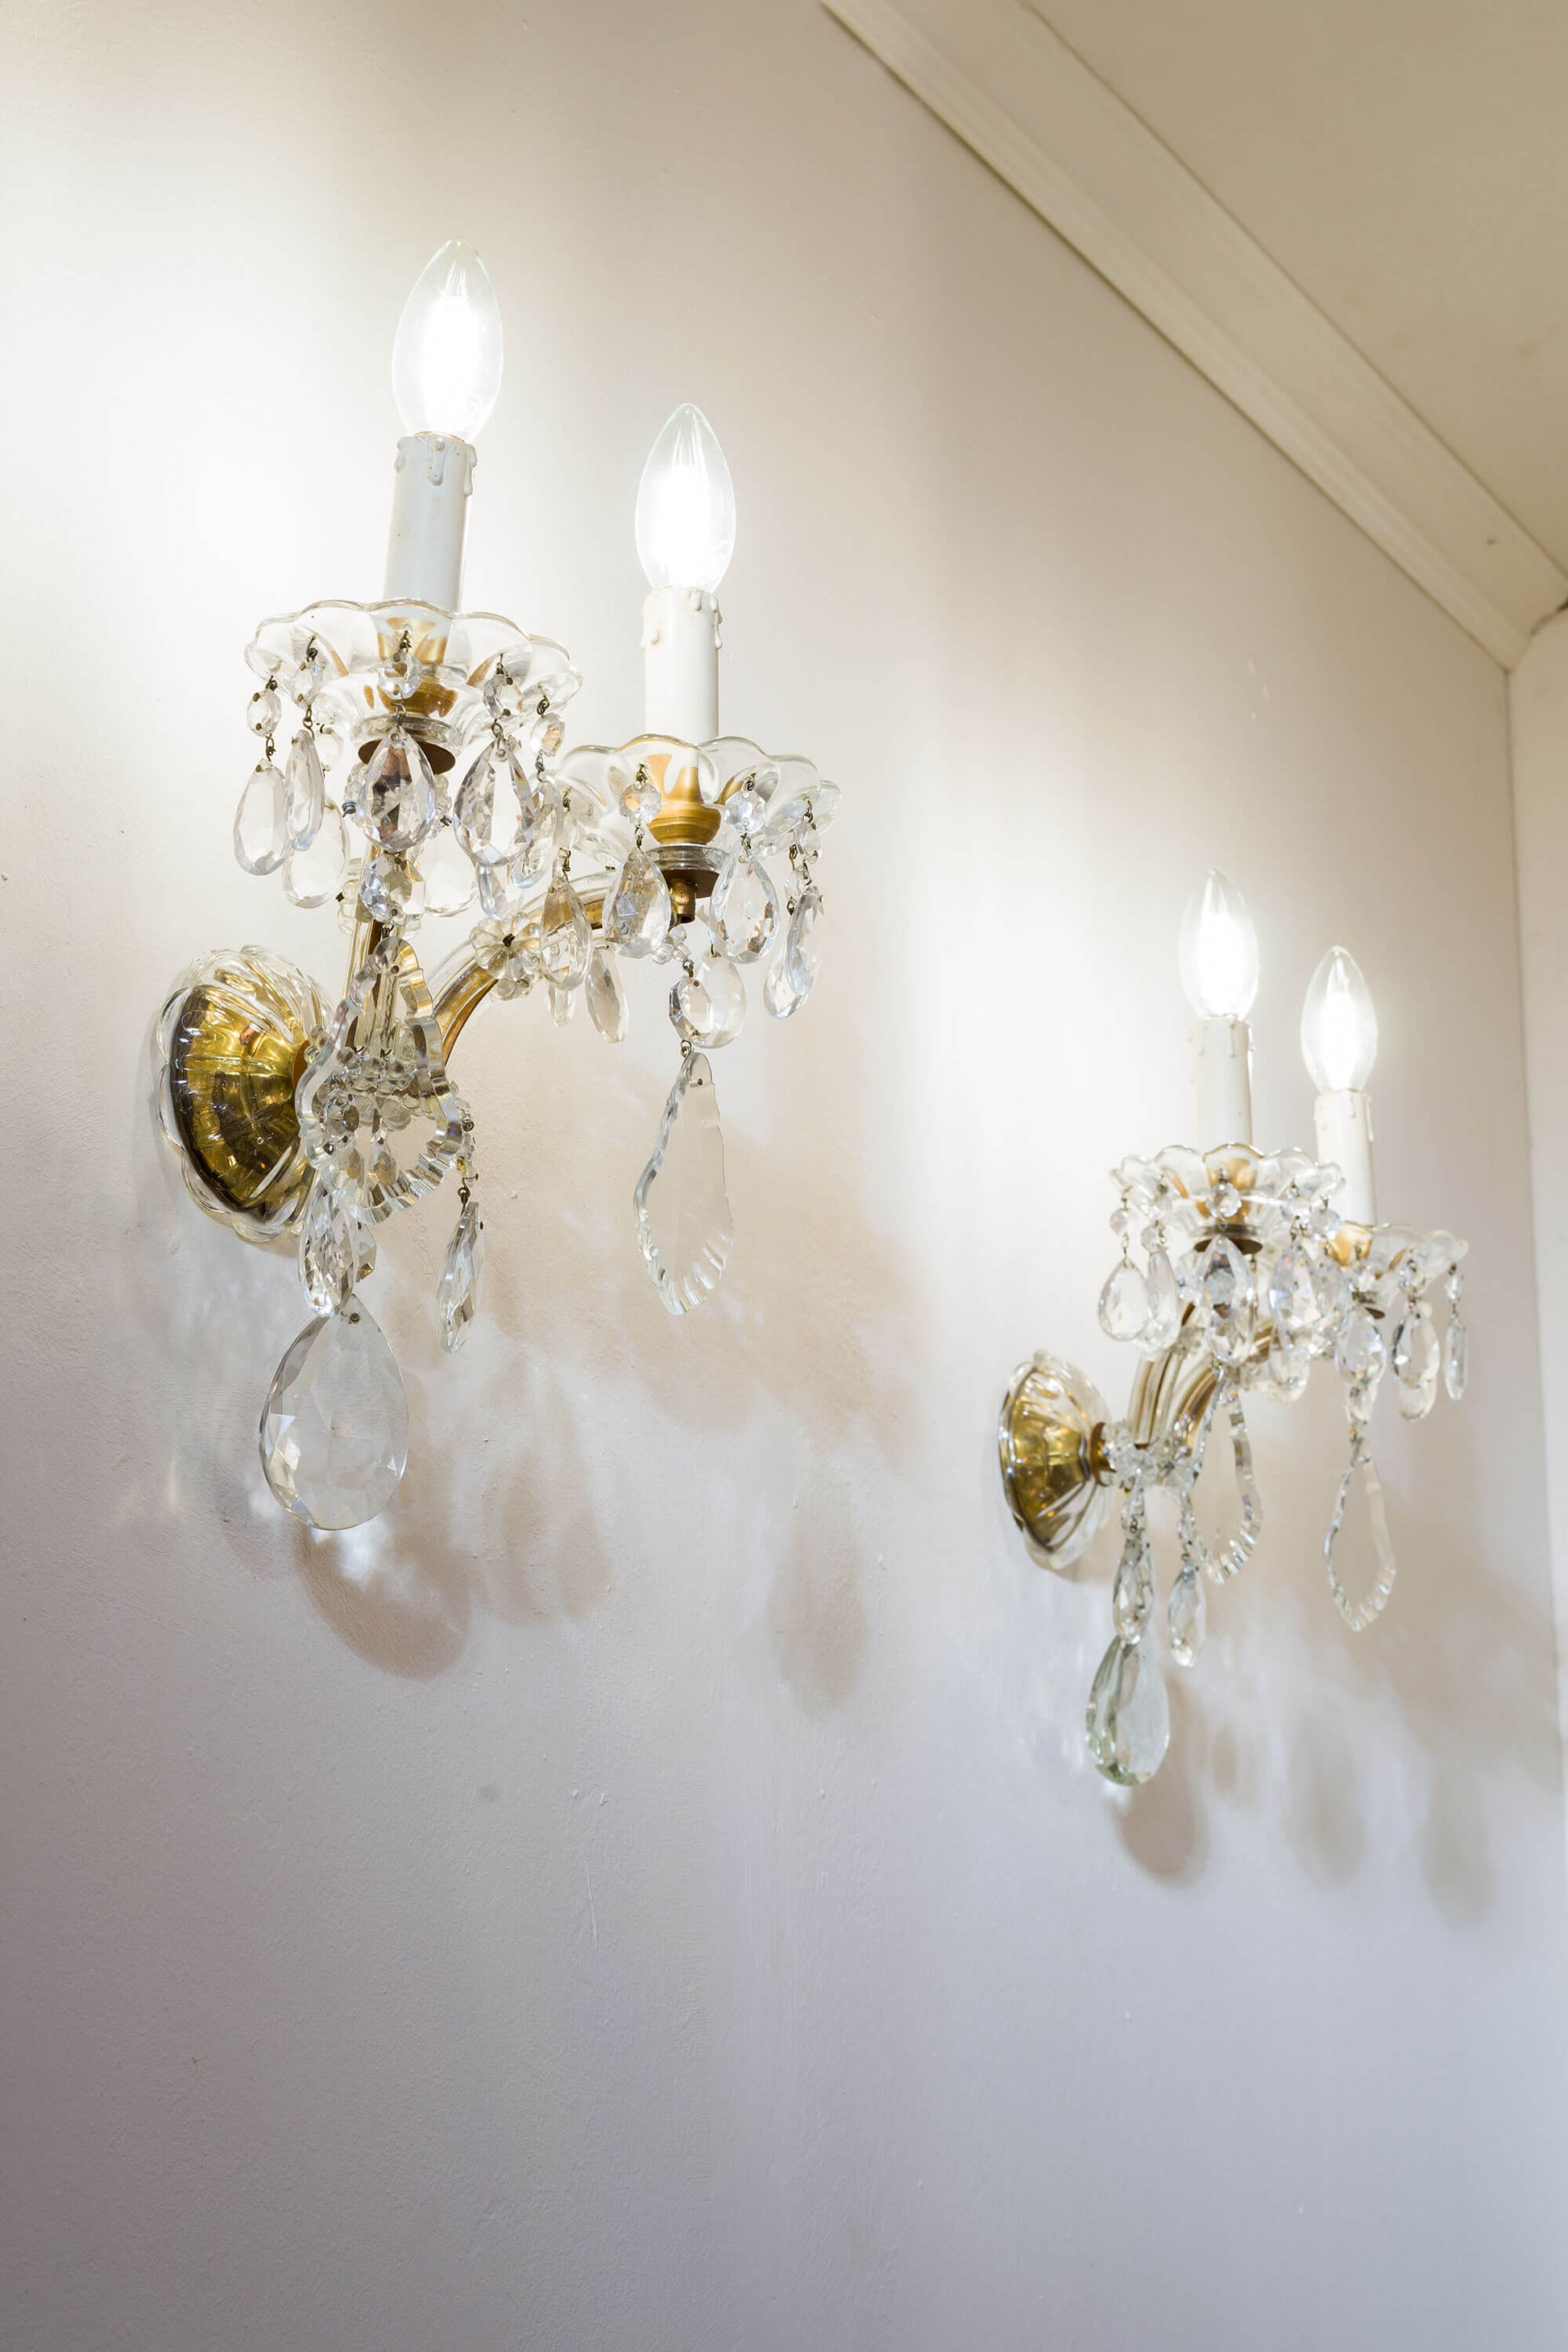 Antiche lampade a muro con gemme ottagonali e delicate placche di cristallo pendenti.|Lo Stile Italiano